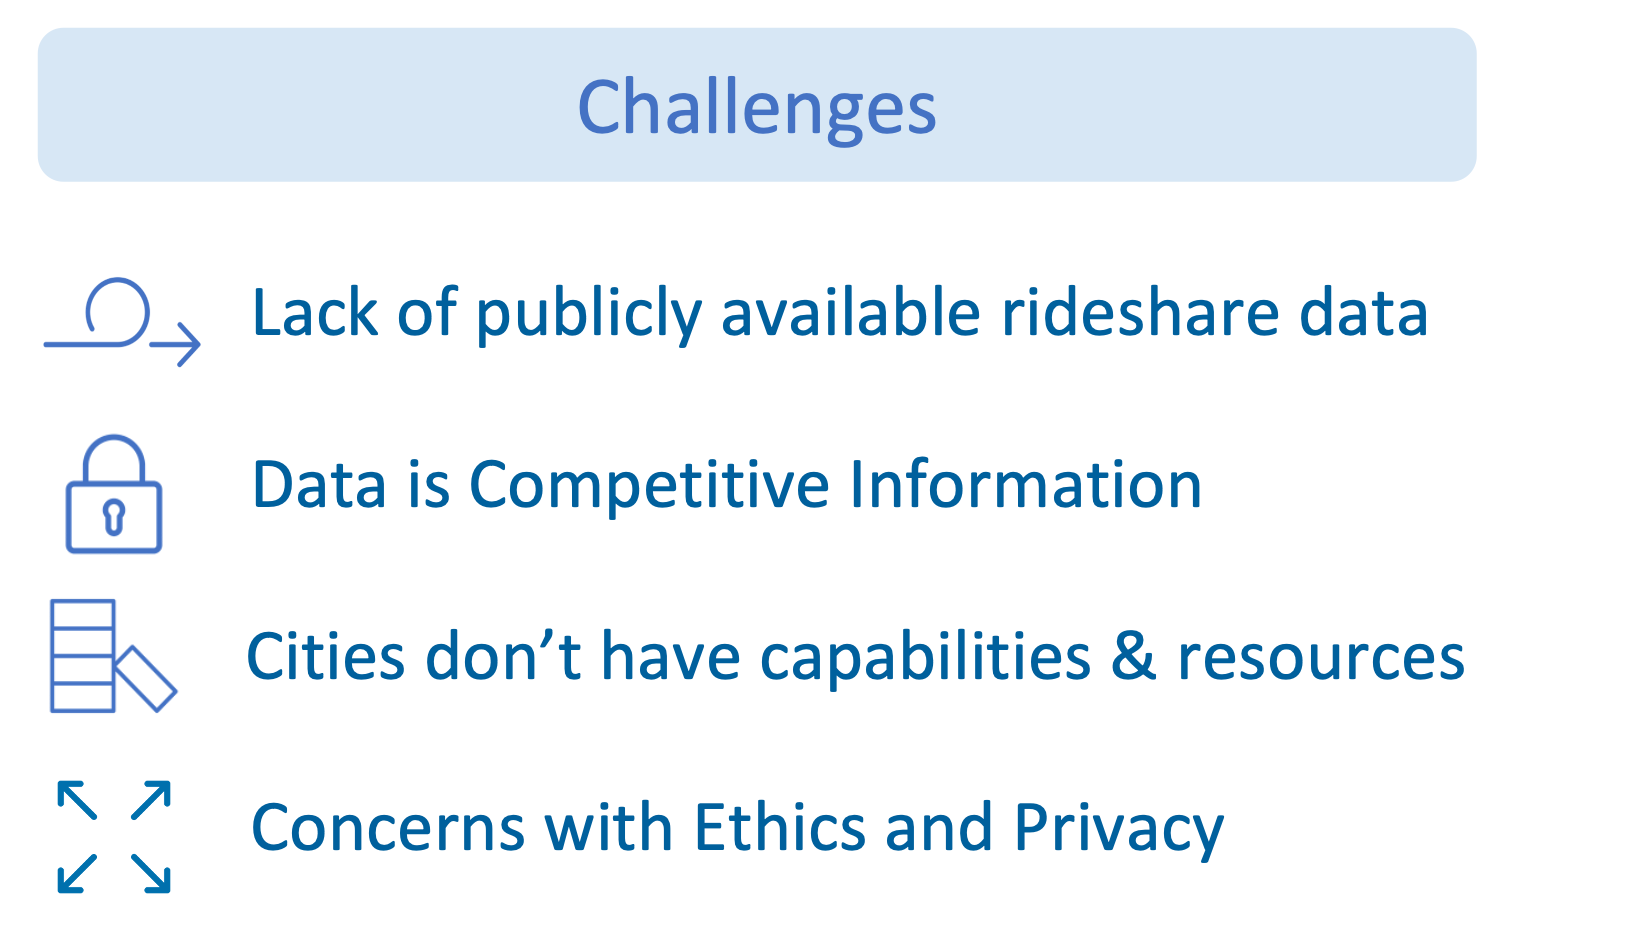 challenges of ridesharing data